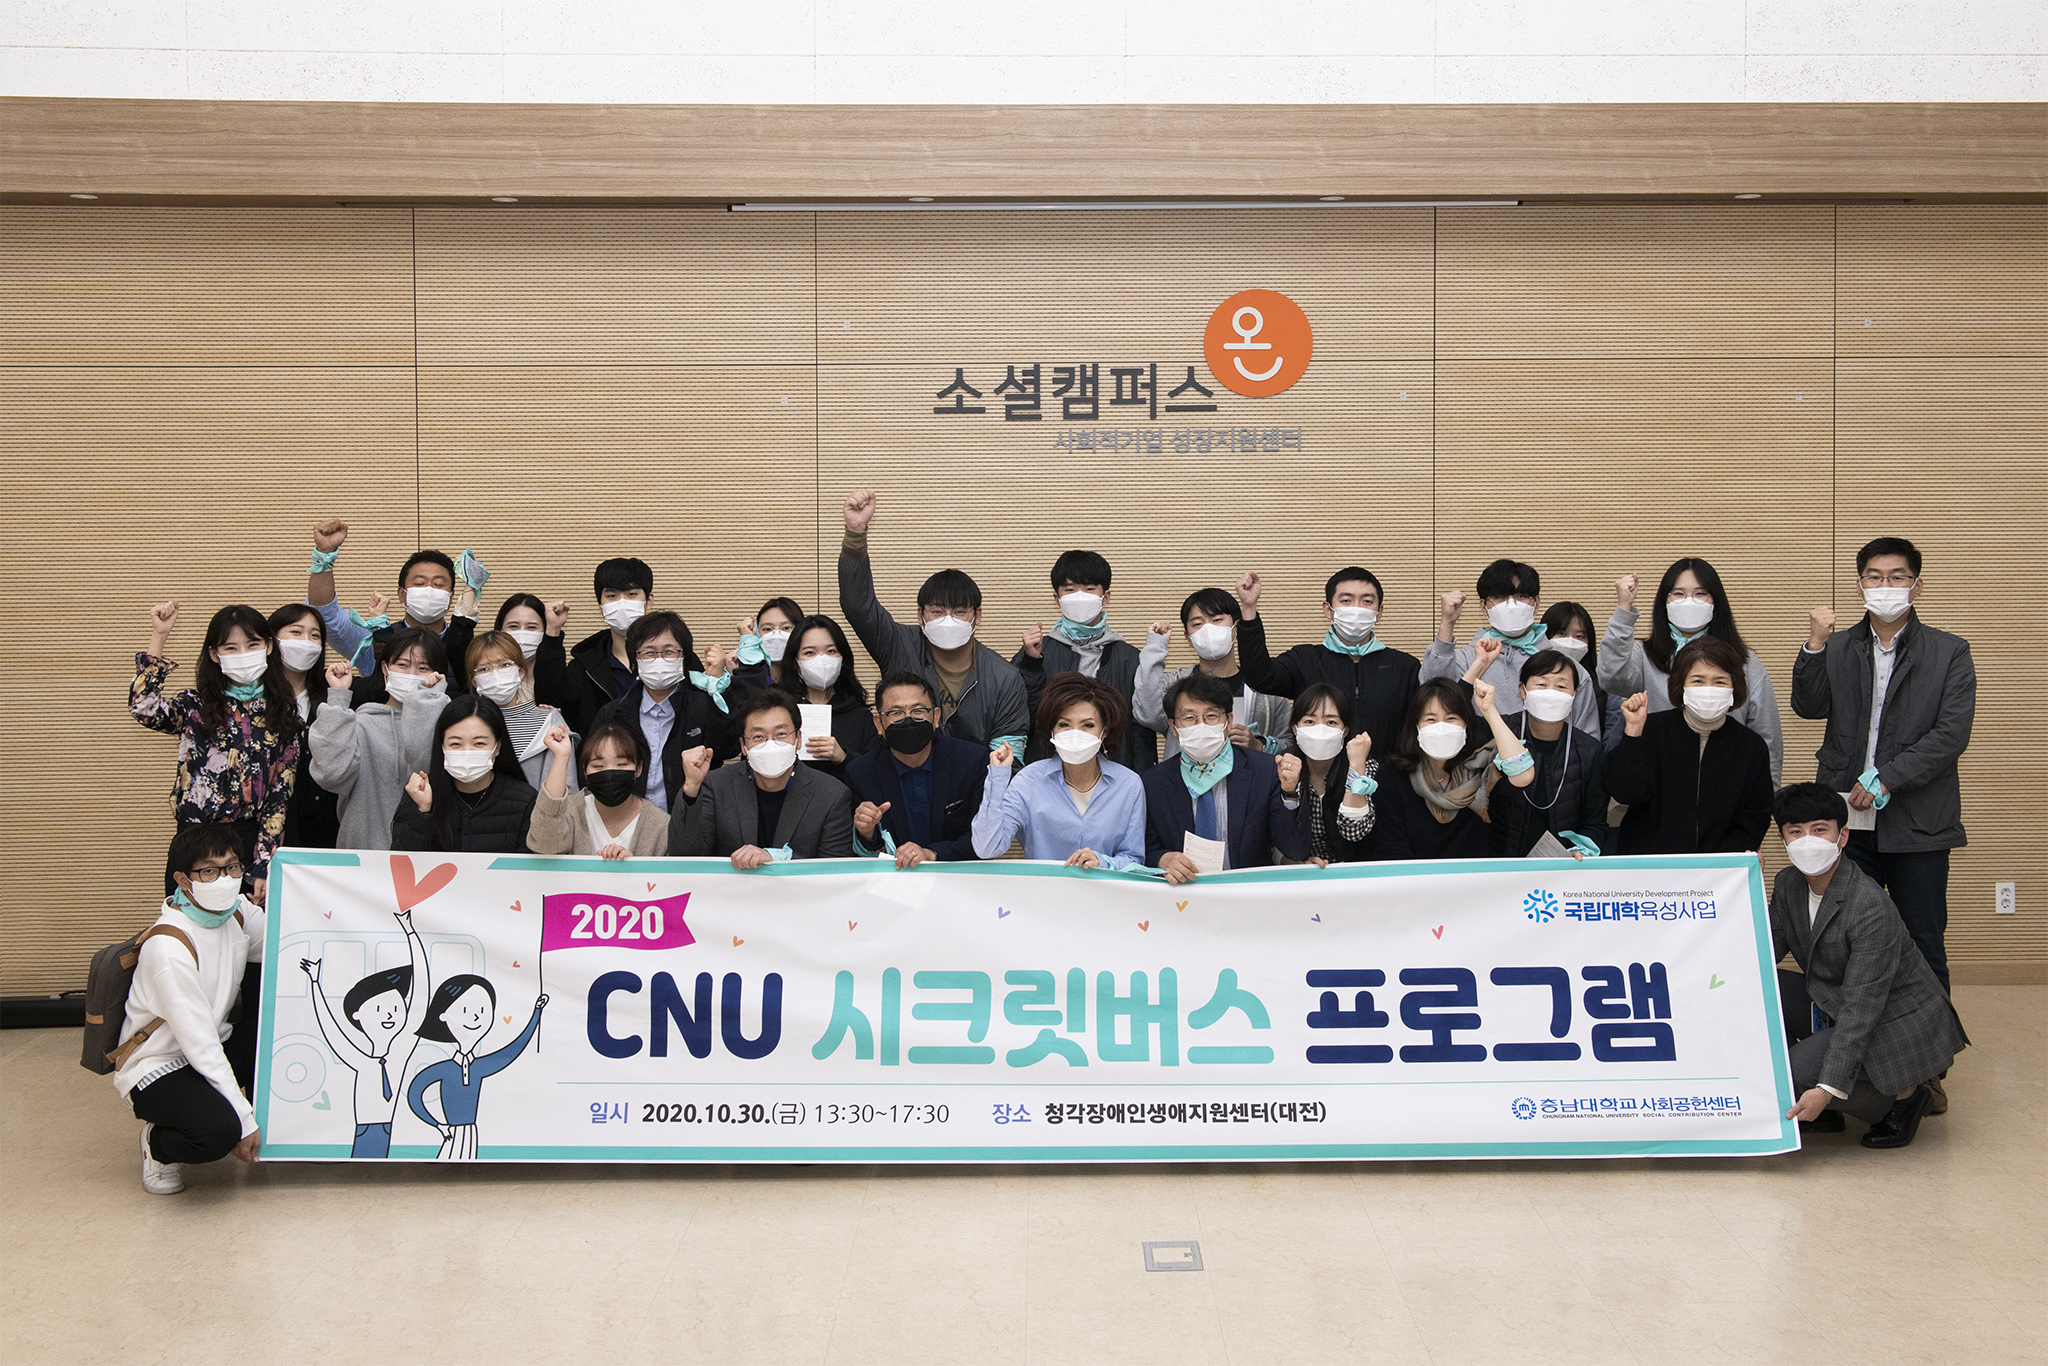 “‘CNU 시크릿 버스’ 타고 사회공헌 활동 함께 했어요” 사진